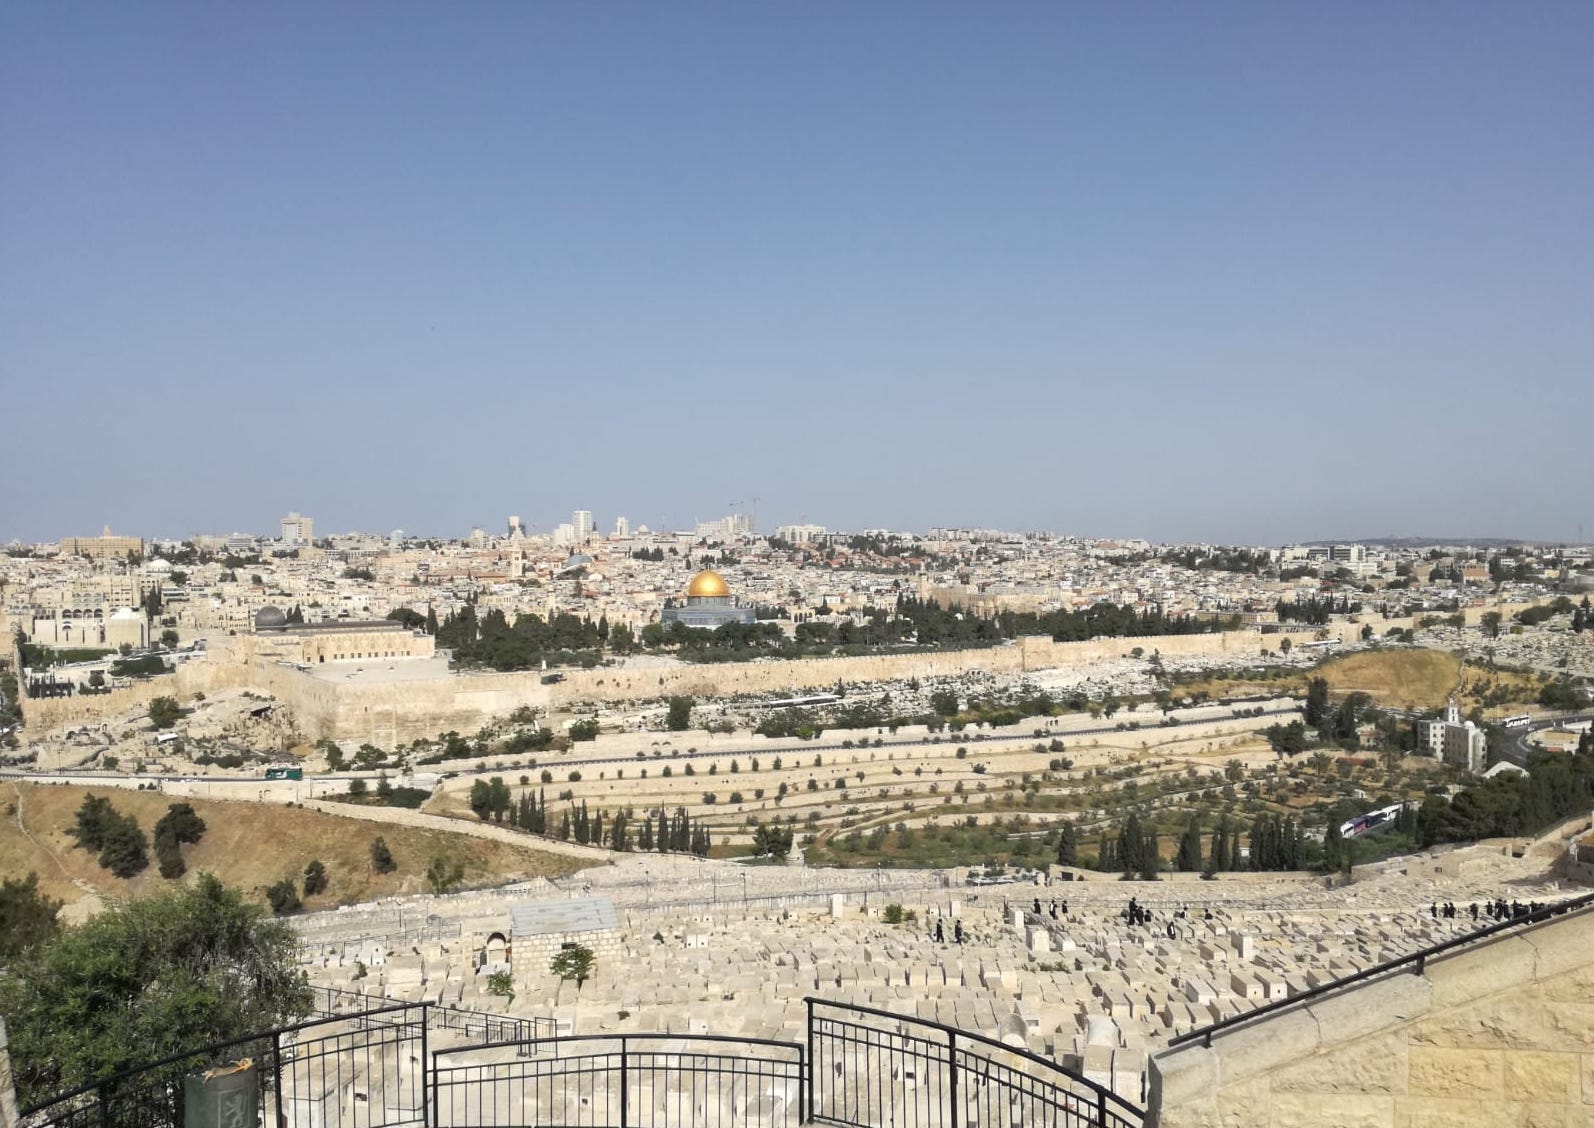 Pilgrimage to the Holy Land, November 2020